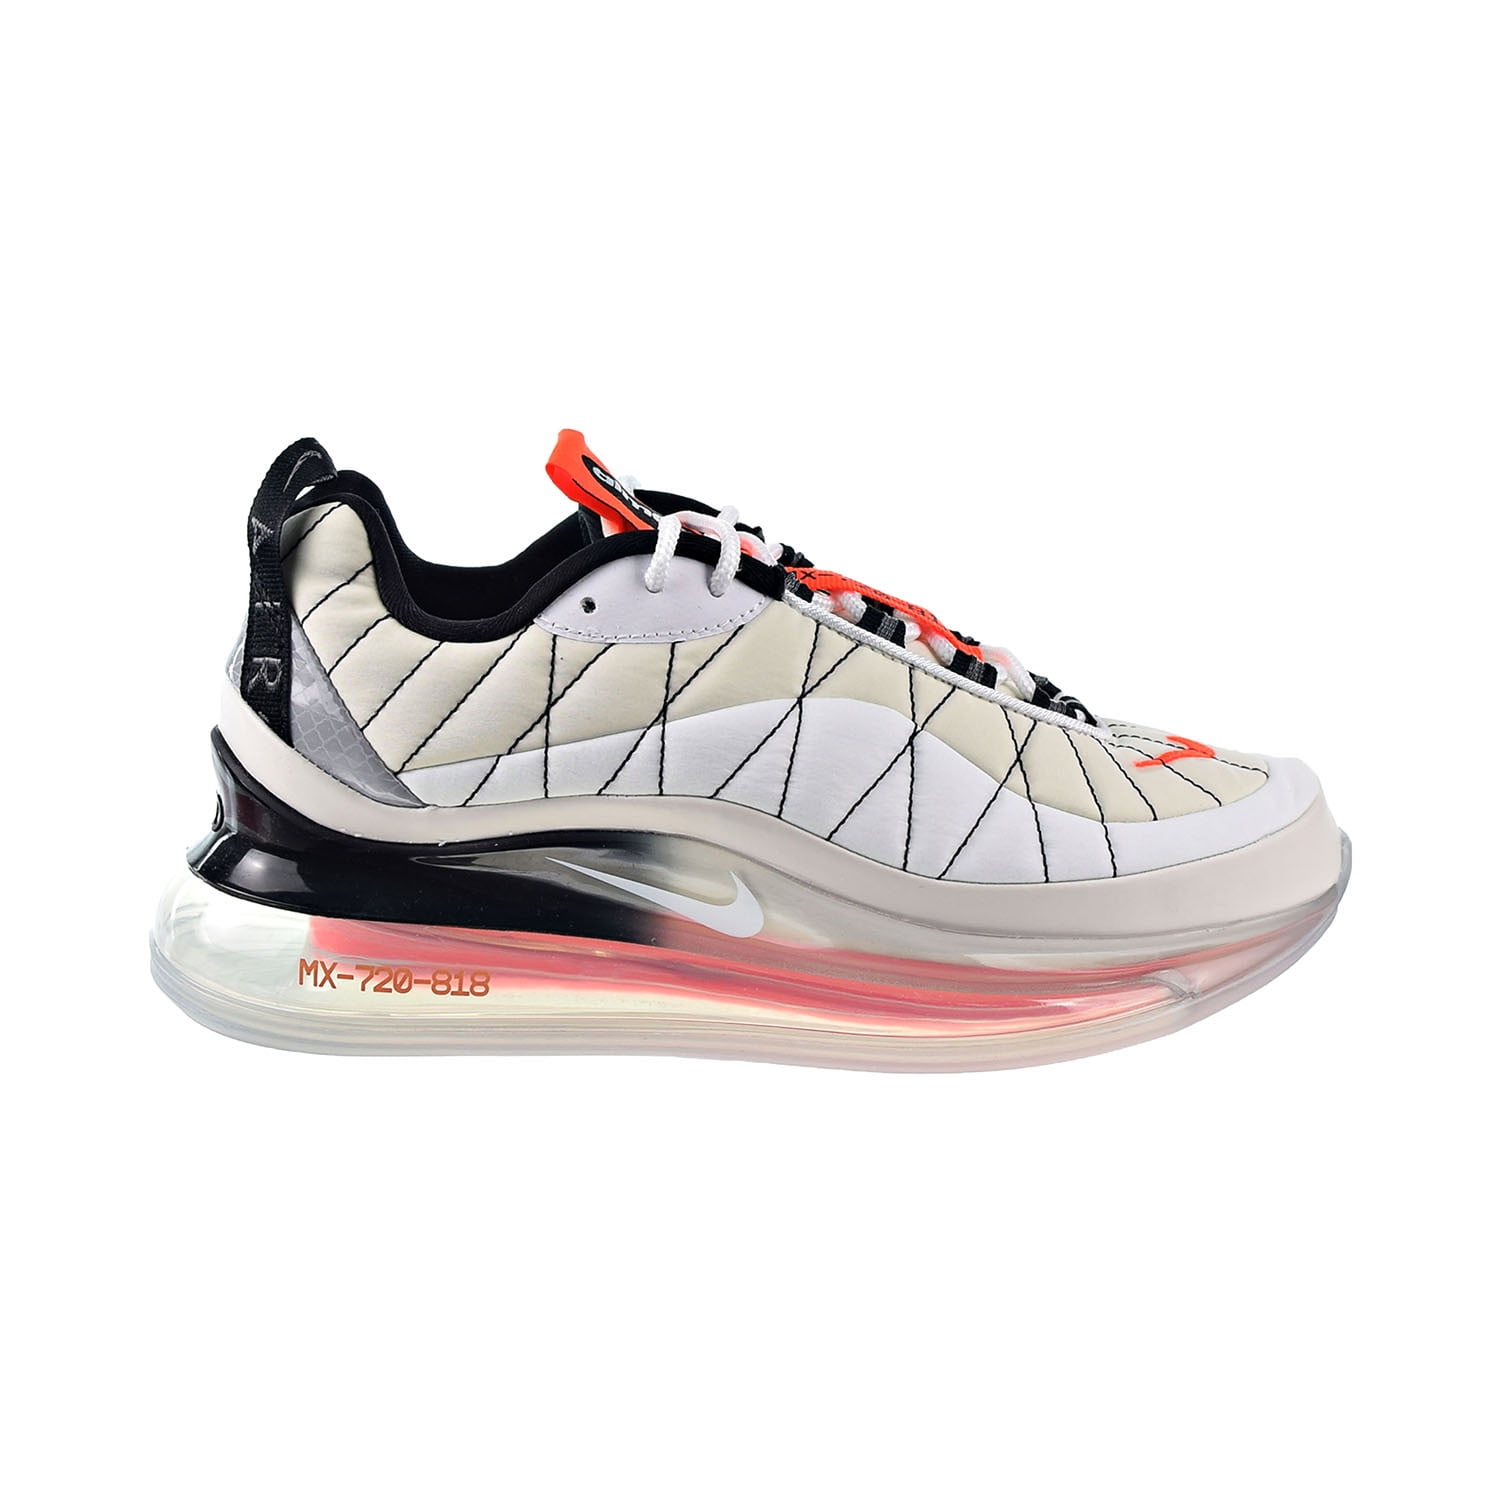 ورق جدران فينيل Nike Air Max MX 720-818 Women's Shoes Sail-White-Black-Hyper Orange  ci3869-100 ورق جدران فينيل